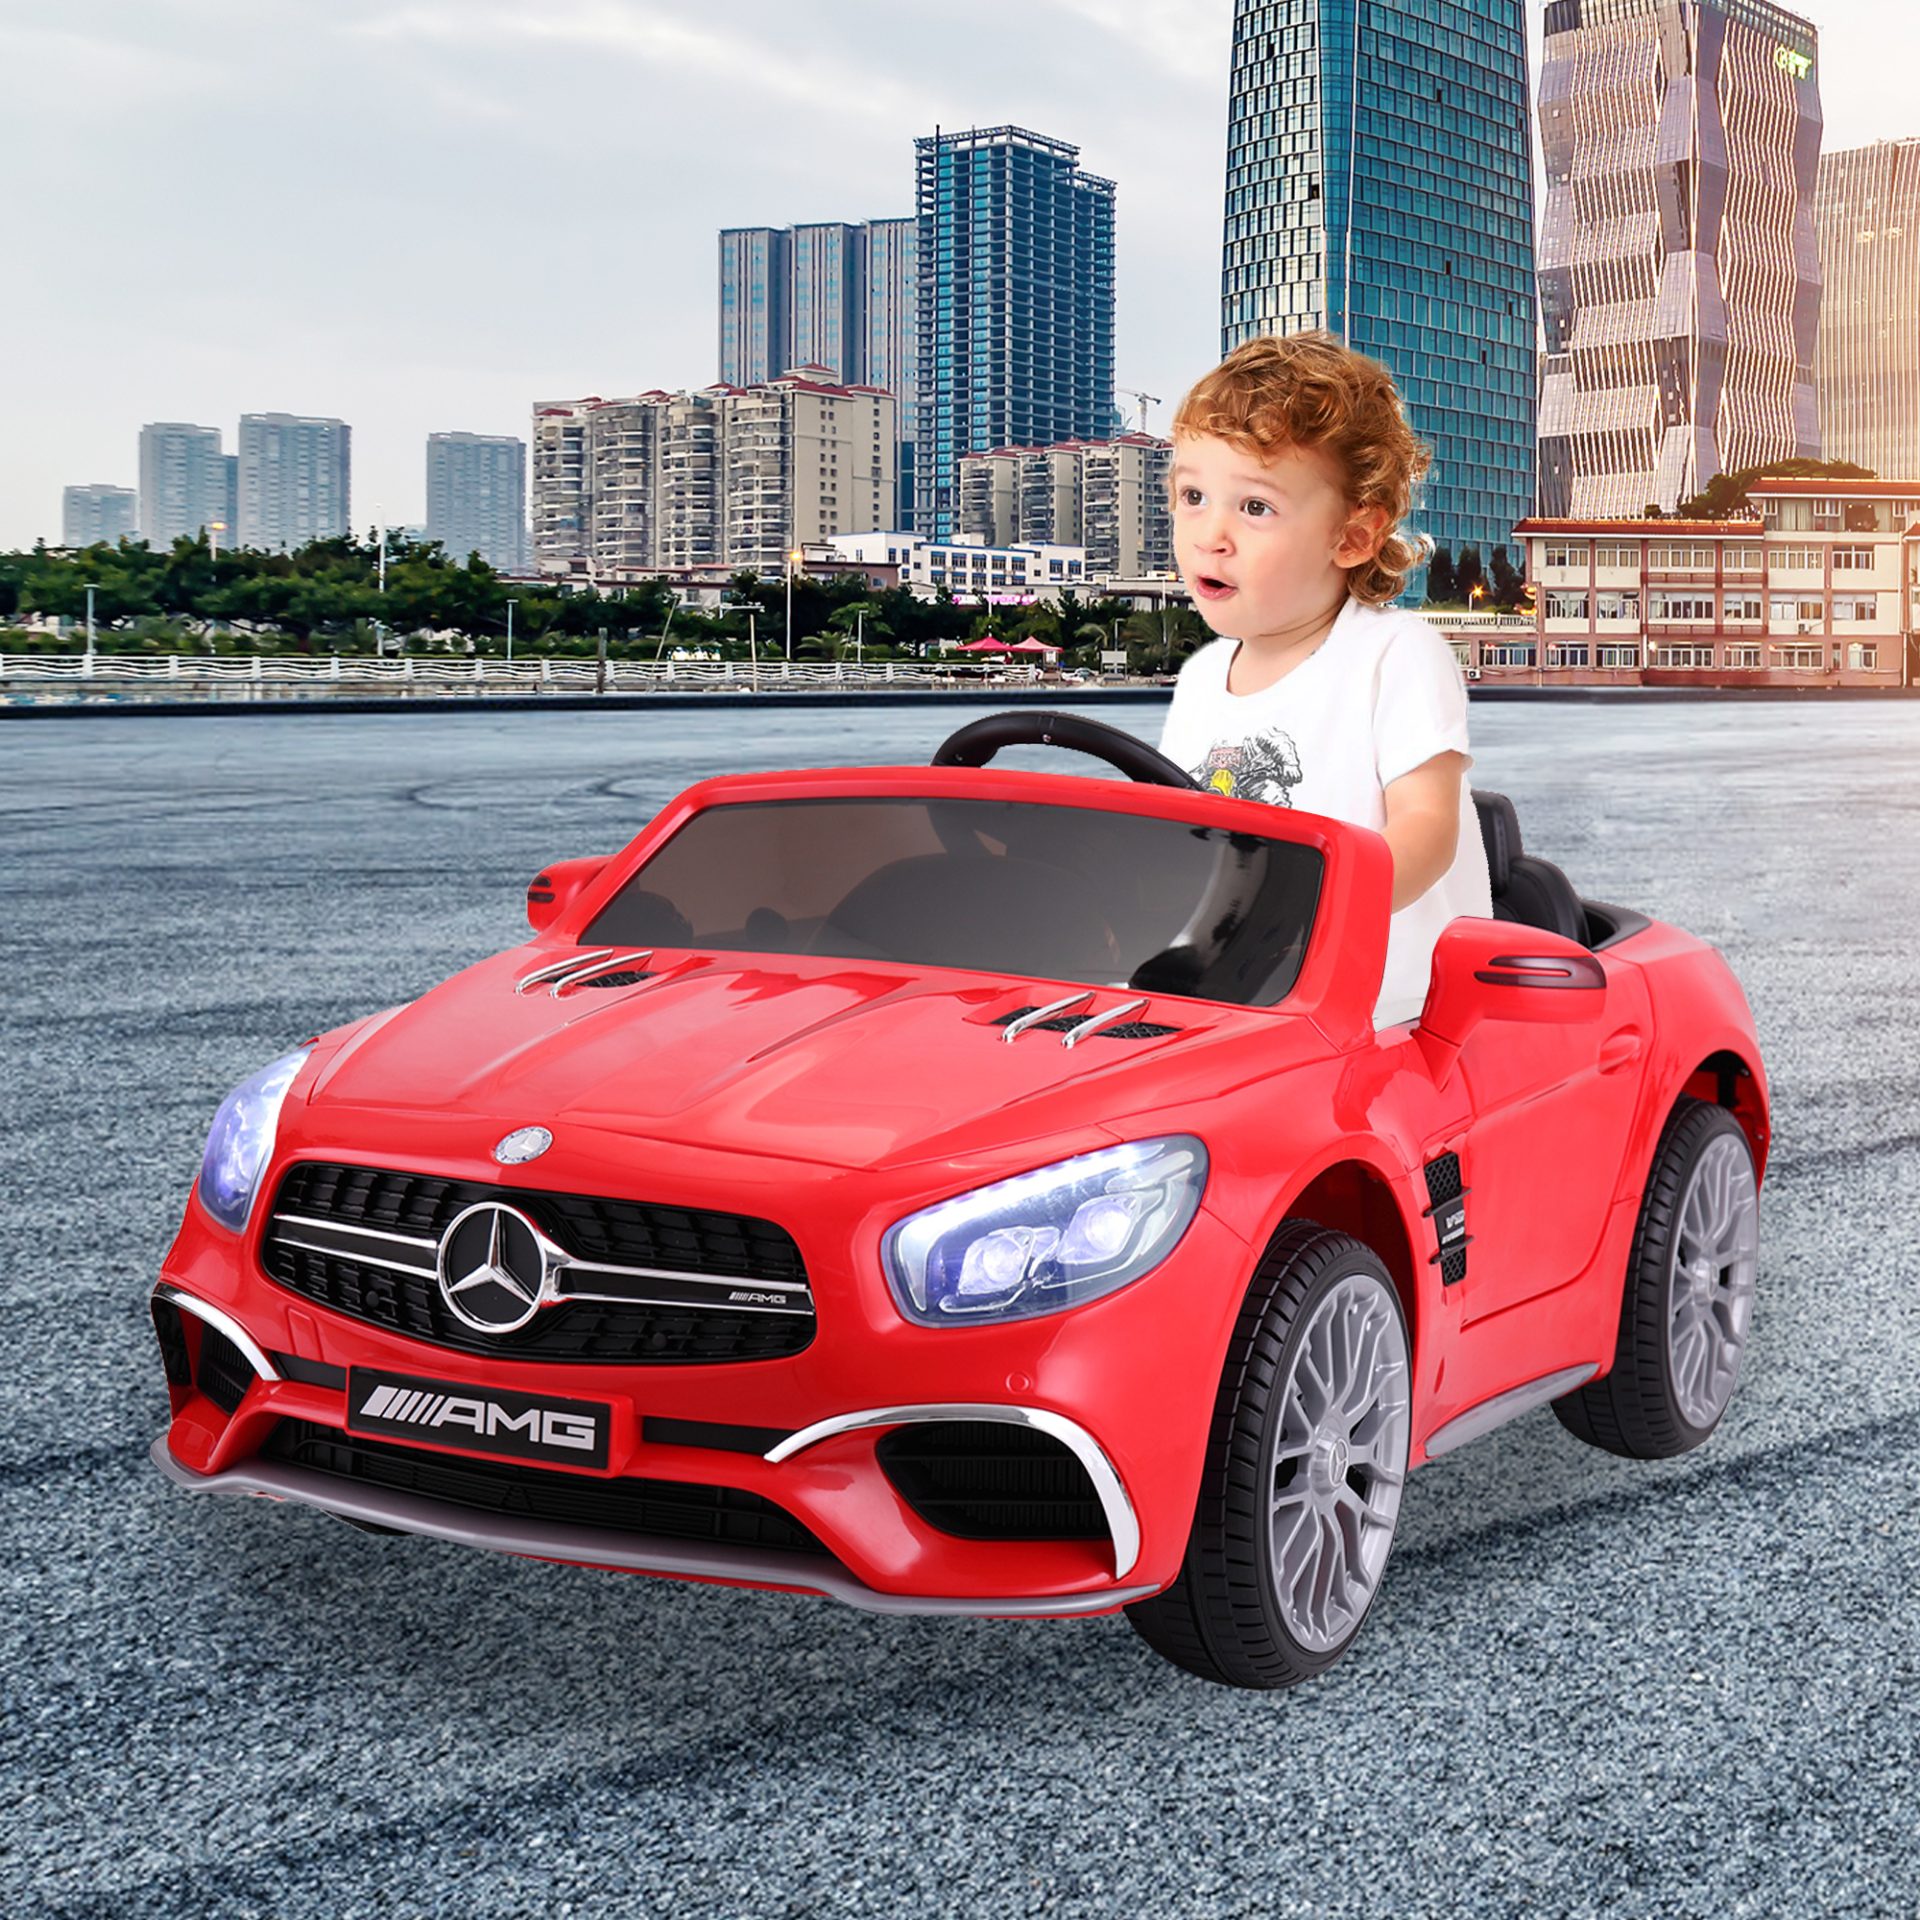 Bidrag Mesterskab subtropisk Tobbi Battery Powered 12V Ride On Toys Licensed Mercedes Benz, Kids  Electric Car With Parental Remote, Red | TOBBI